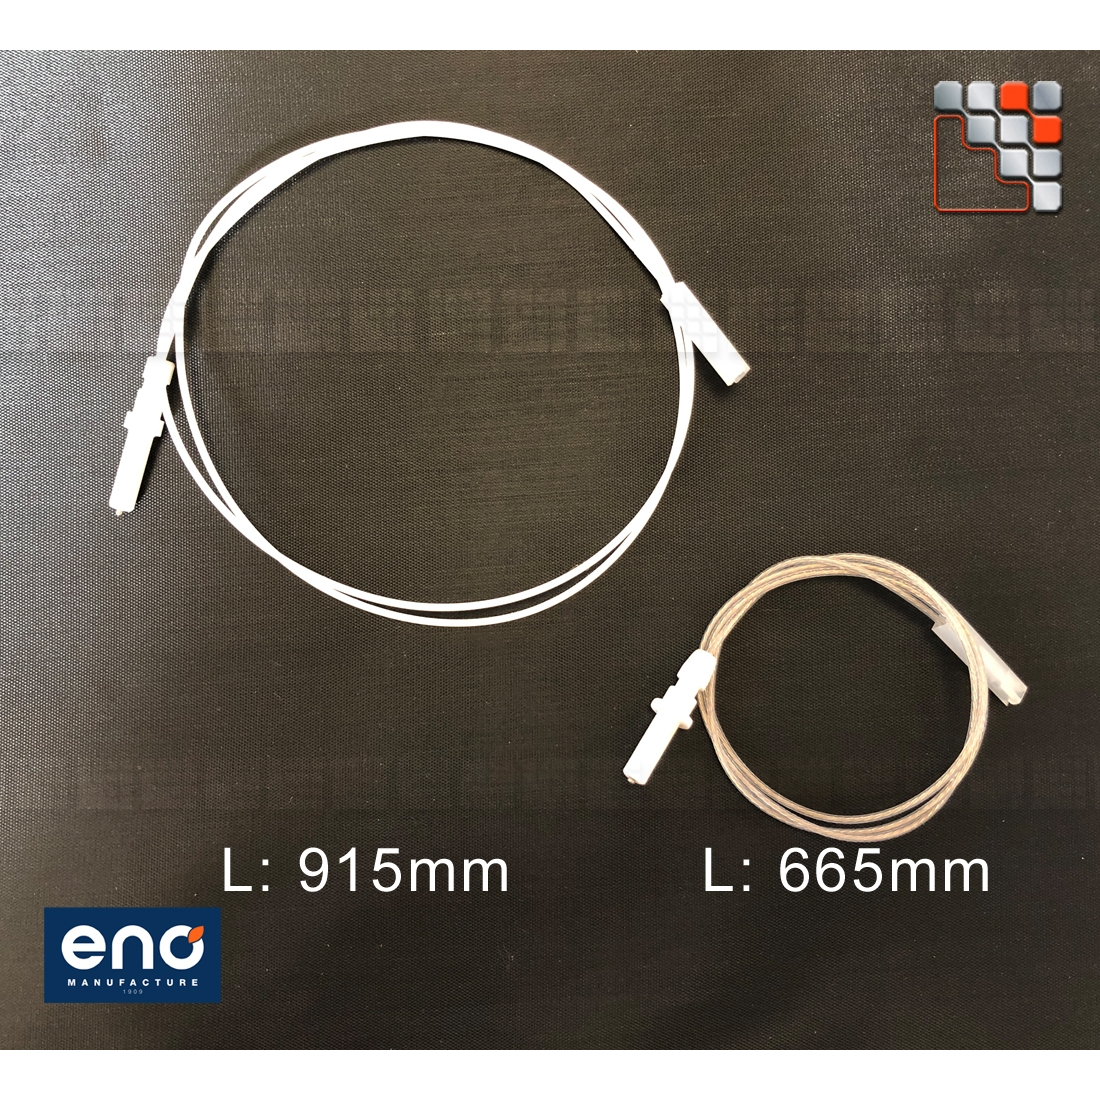 Electrode Piezo Electrique Plancha ENO E45-71645 ENO sas Accessoires Pièces détachées Autres